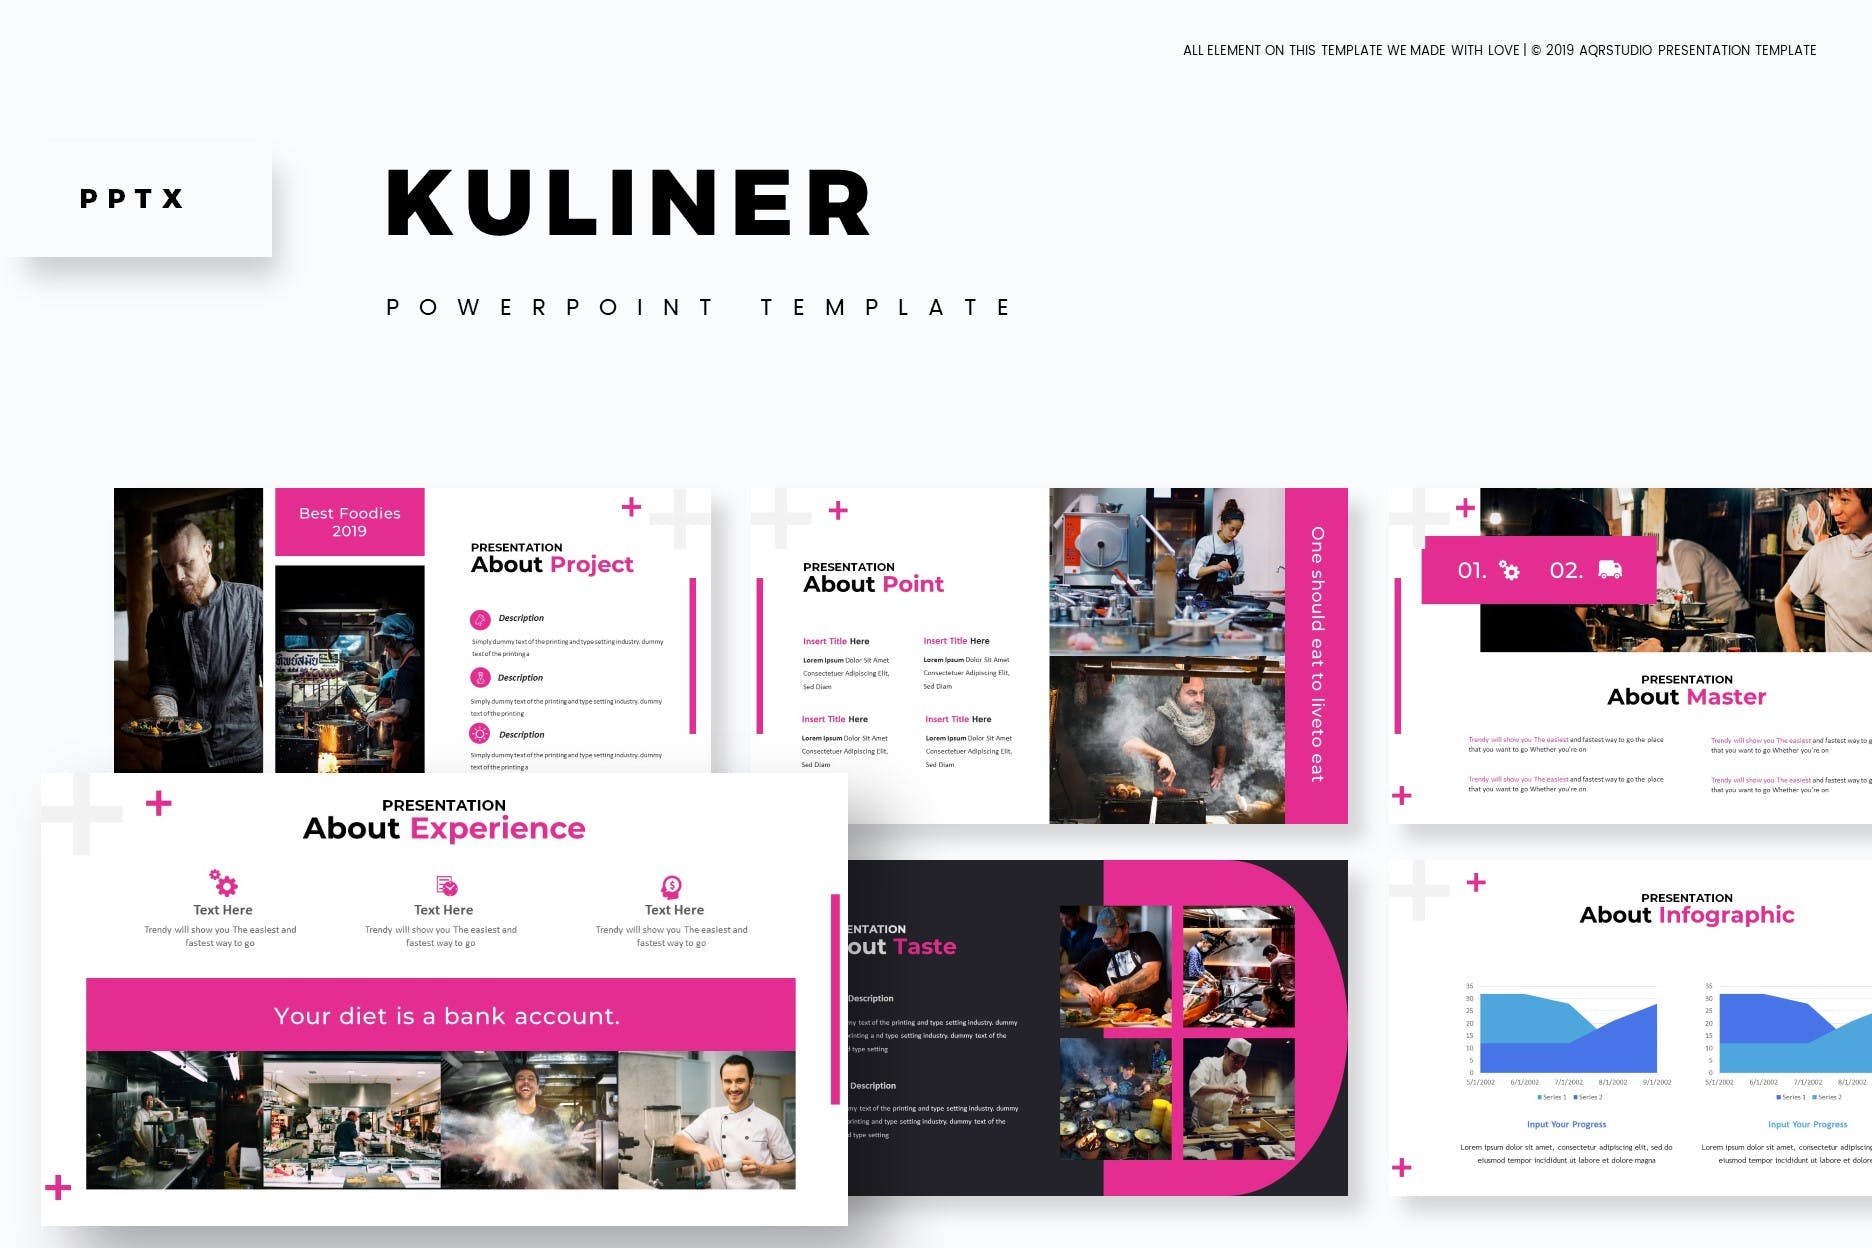 餐厅美食主题/餐厅加盟PPT幻灯片模板下载 Kuliner – Powerpoint Template插图